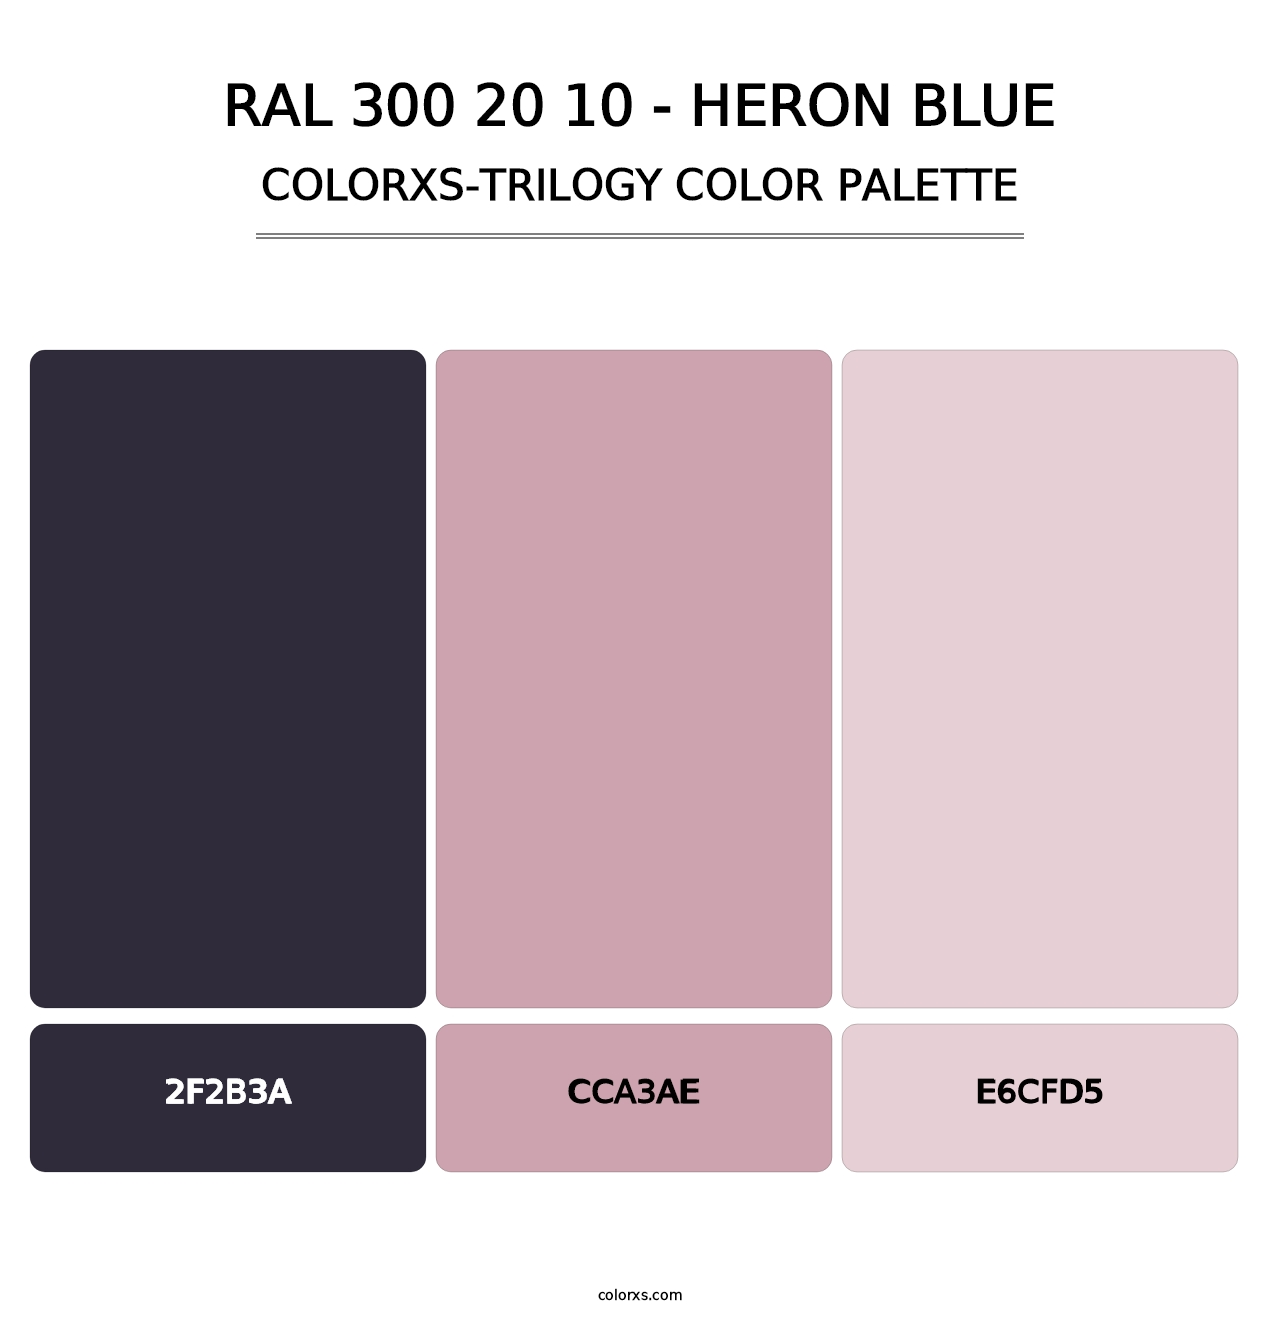 RAL 300 20 10 - Heron Blue - Colorxs Trilogy Palette